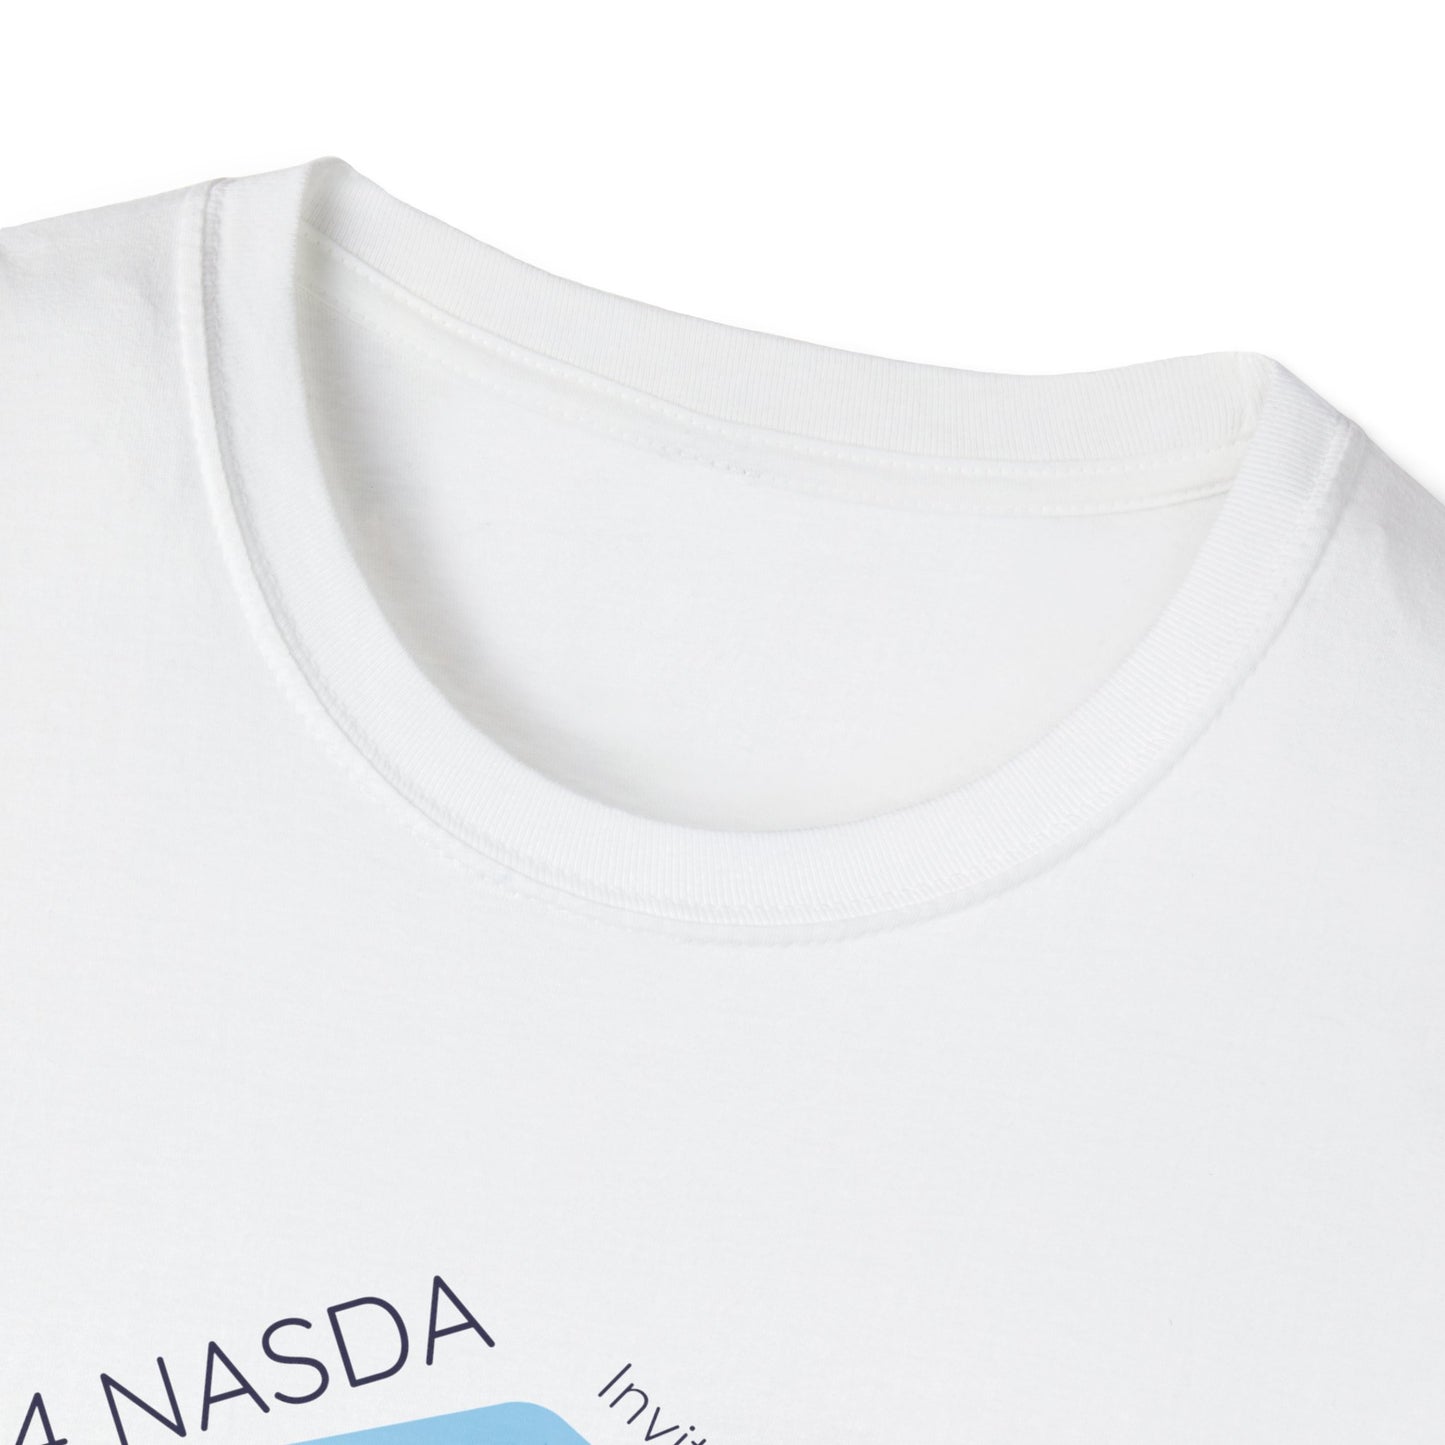 PNW NASDA 2 Unisex Softstyle T-Shirt